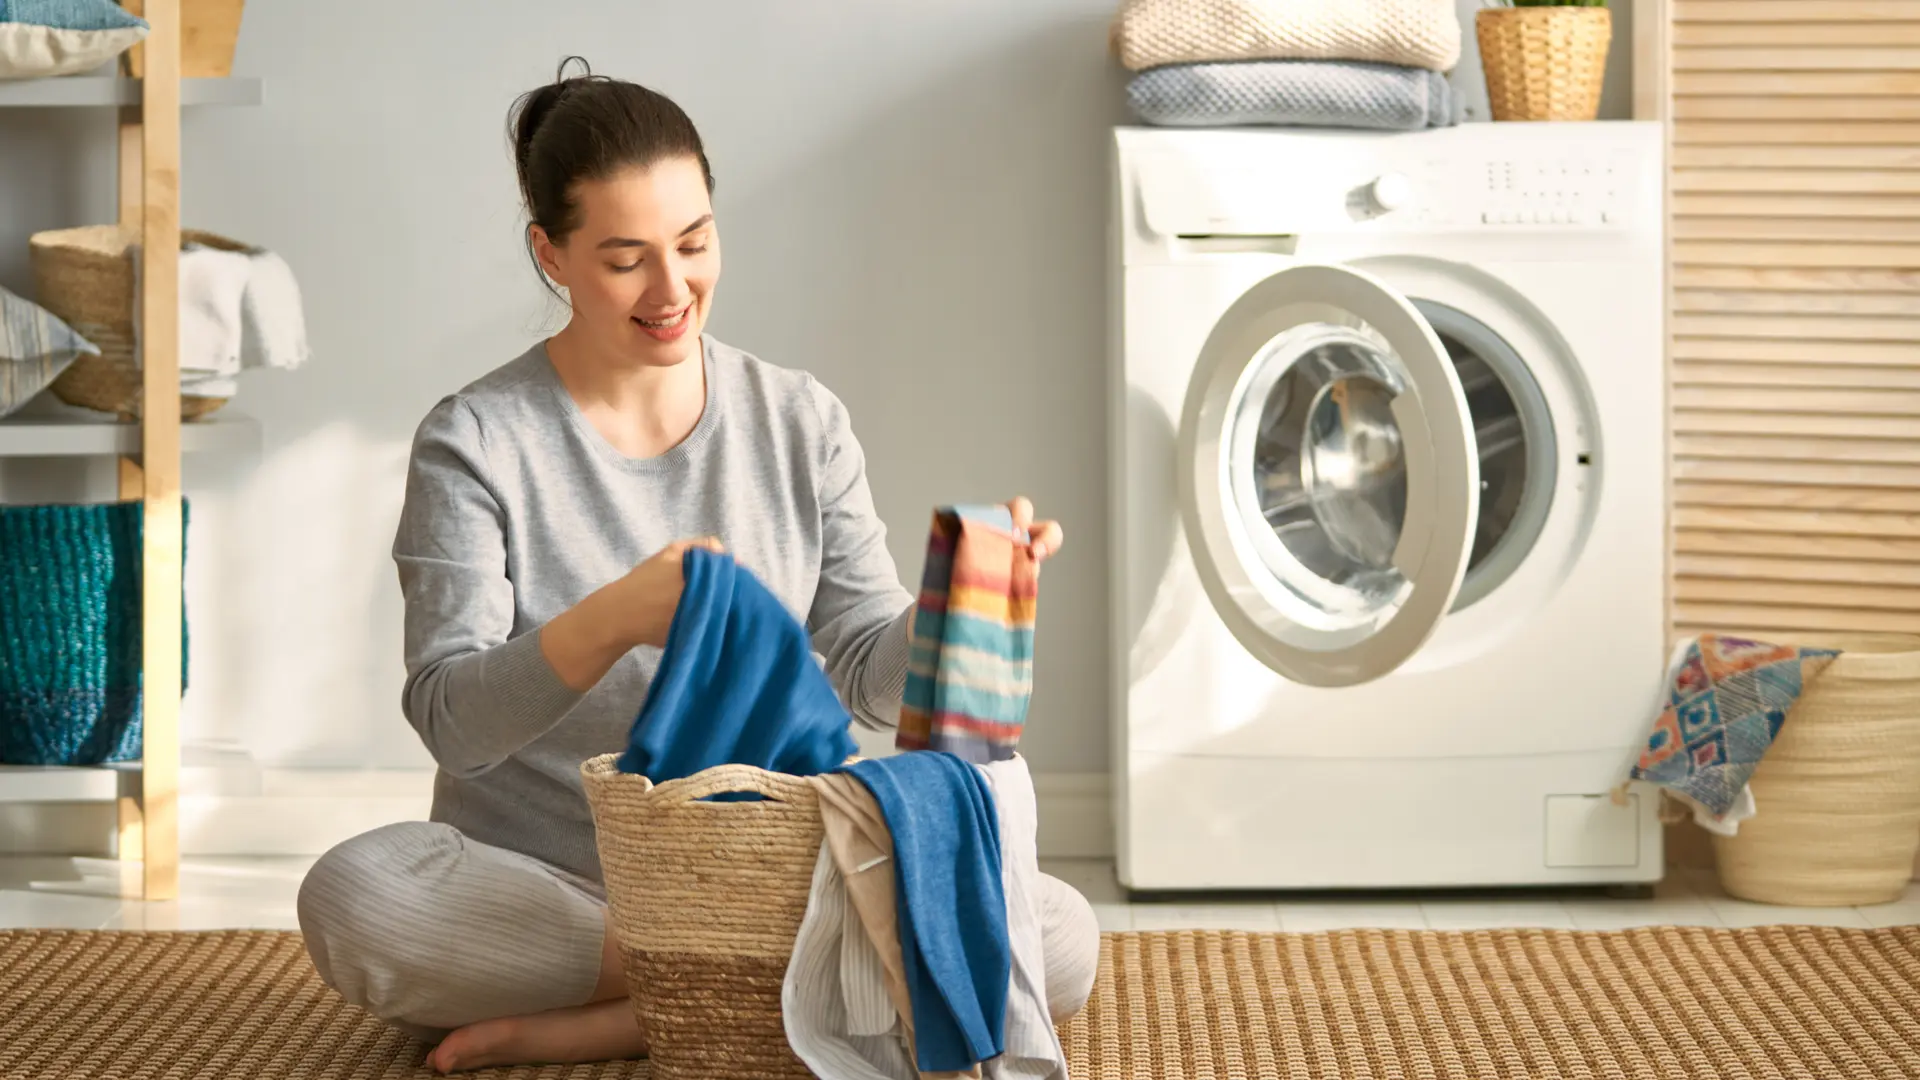 Mulher separa roupas para lavar de acordo com as instruções dos símbolos nas etiquetas das roupas